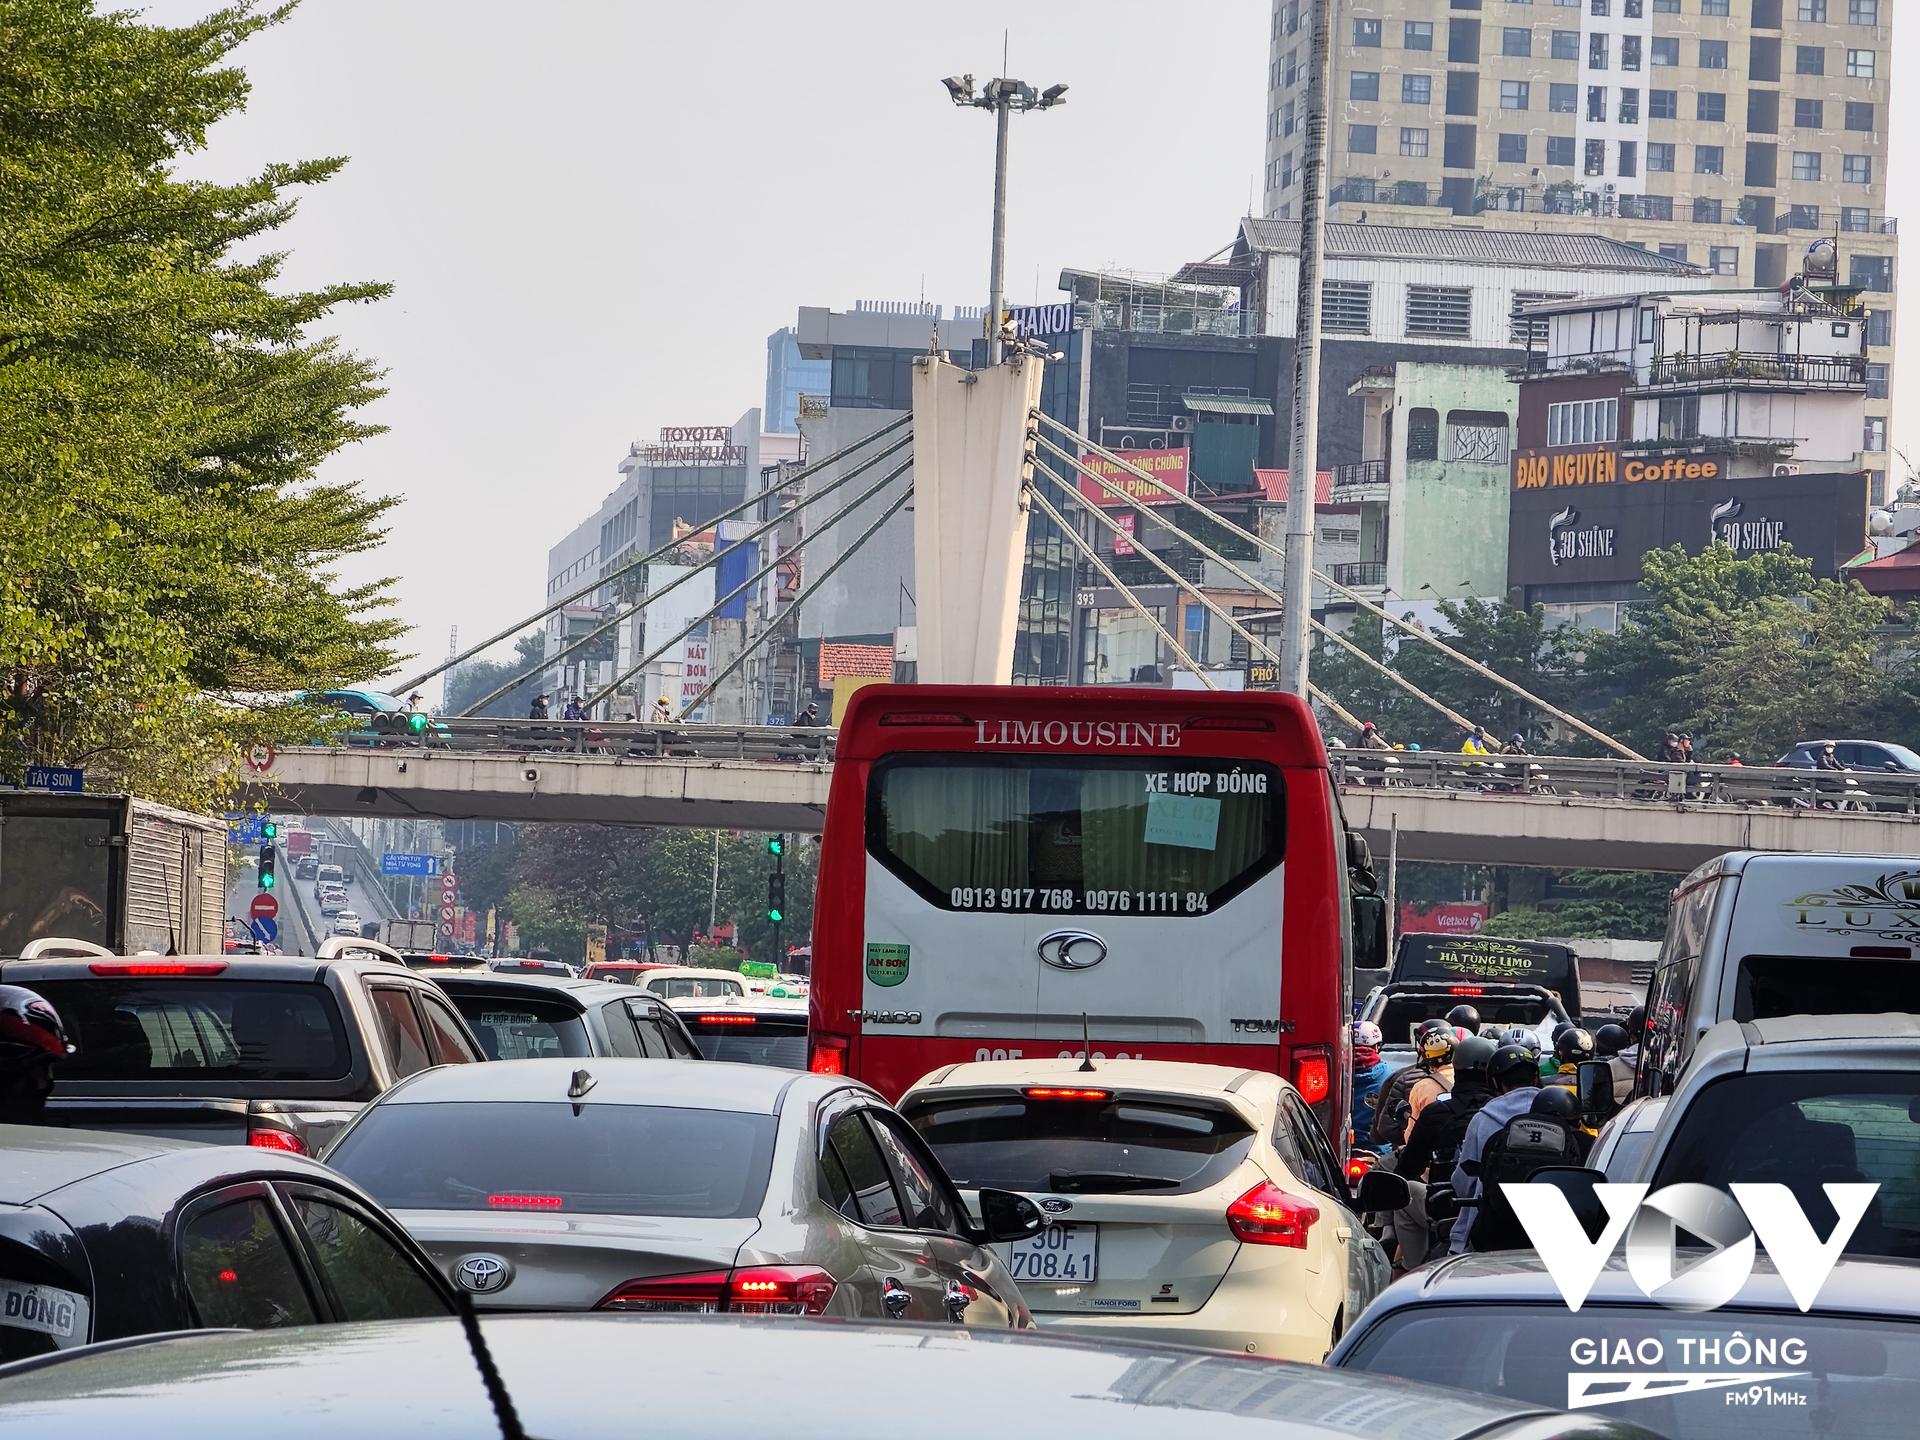 Đây đã là lần thứ 5 trong 2 năm qua, Hà Nội loay hoay tổ chức lại giao thông ở Ngã Tư Sở, áp dụng cả công nghê, nhưng... vẫn lo. Phải chăng giải pháp cốt lõi là quy hoạch đô thị ngay từ đầu.